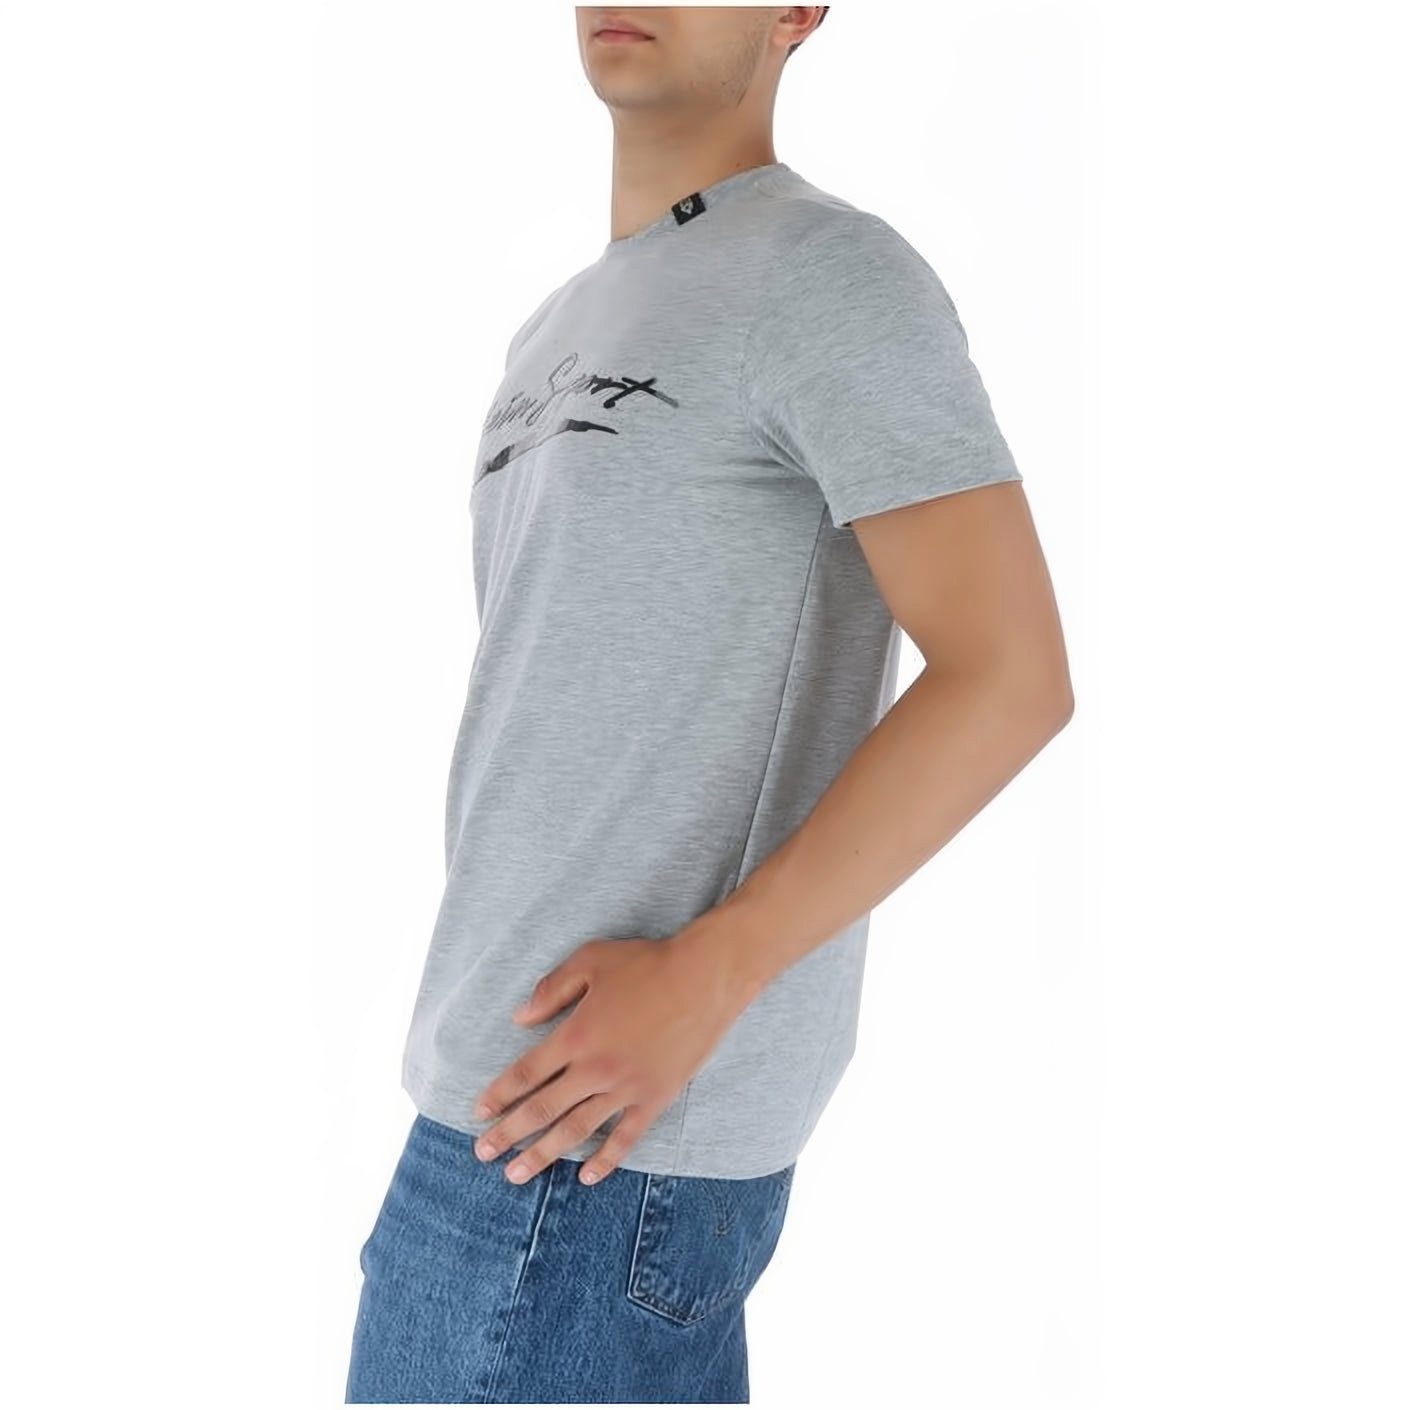 NECK T-Shirt Look, PLEIN SPORT ROUND Farbauswahl vielfältige Tragekomfort, Stylischer hoher